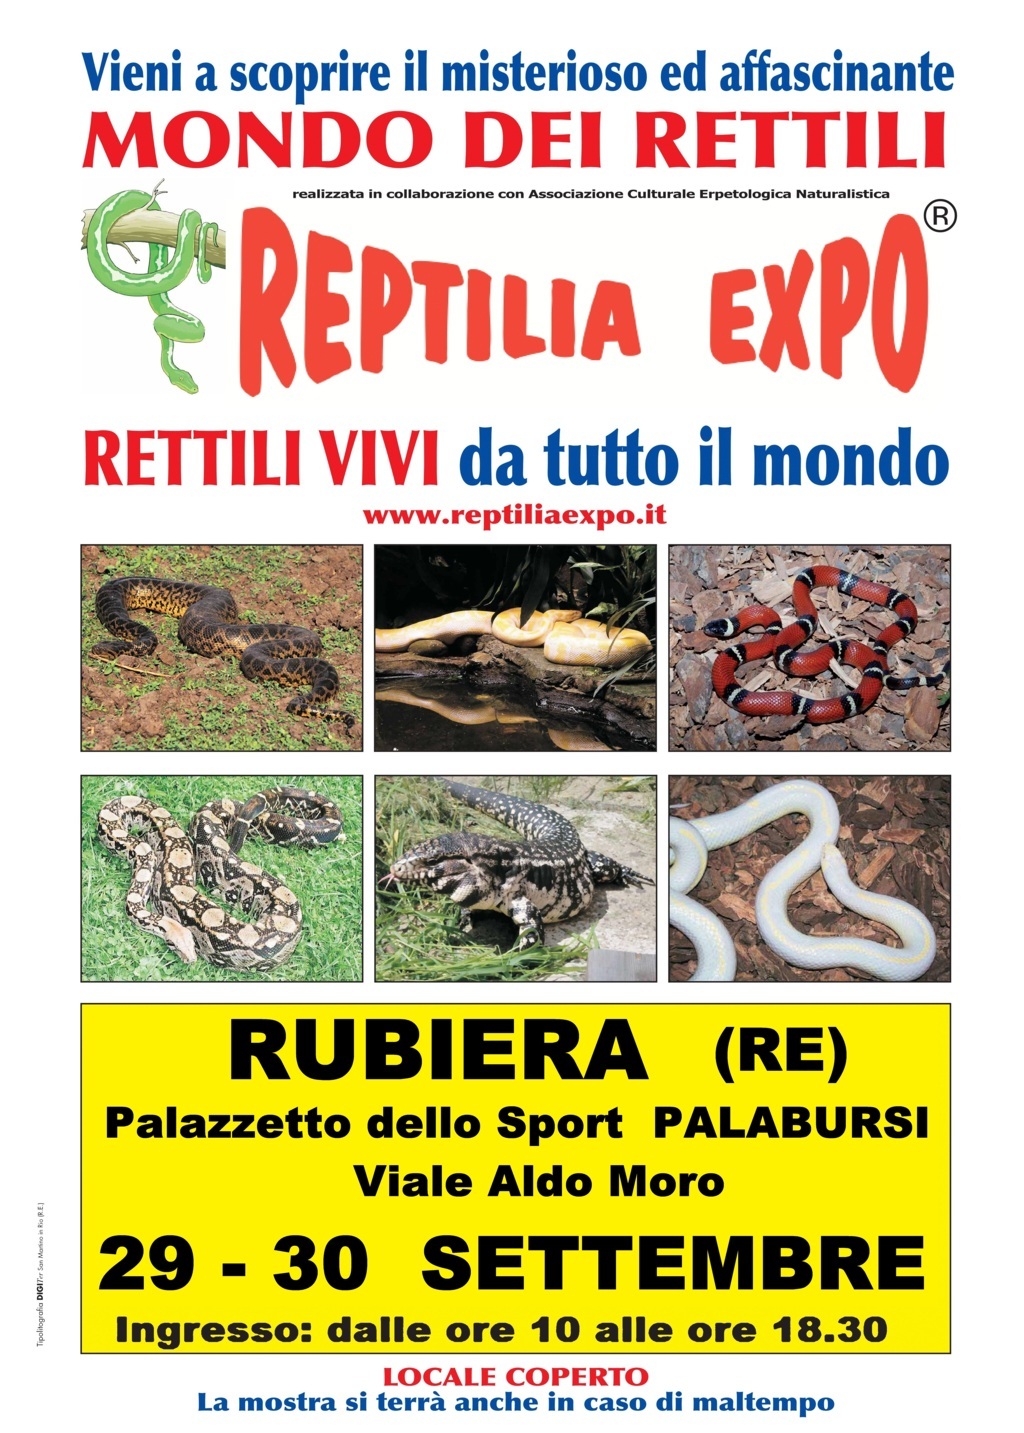 L'affascinante mondo dei rettili in mostra al Palazzetto dello Sport di Rubiera il 29 e 30 settembre